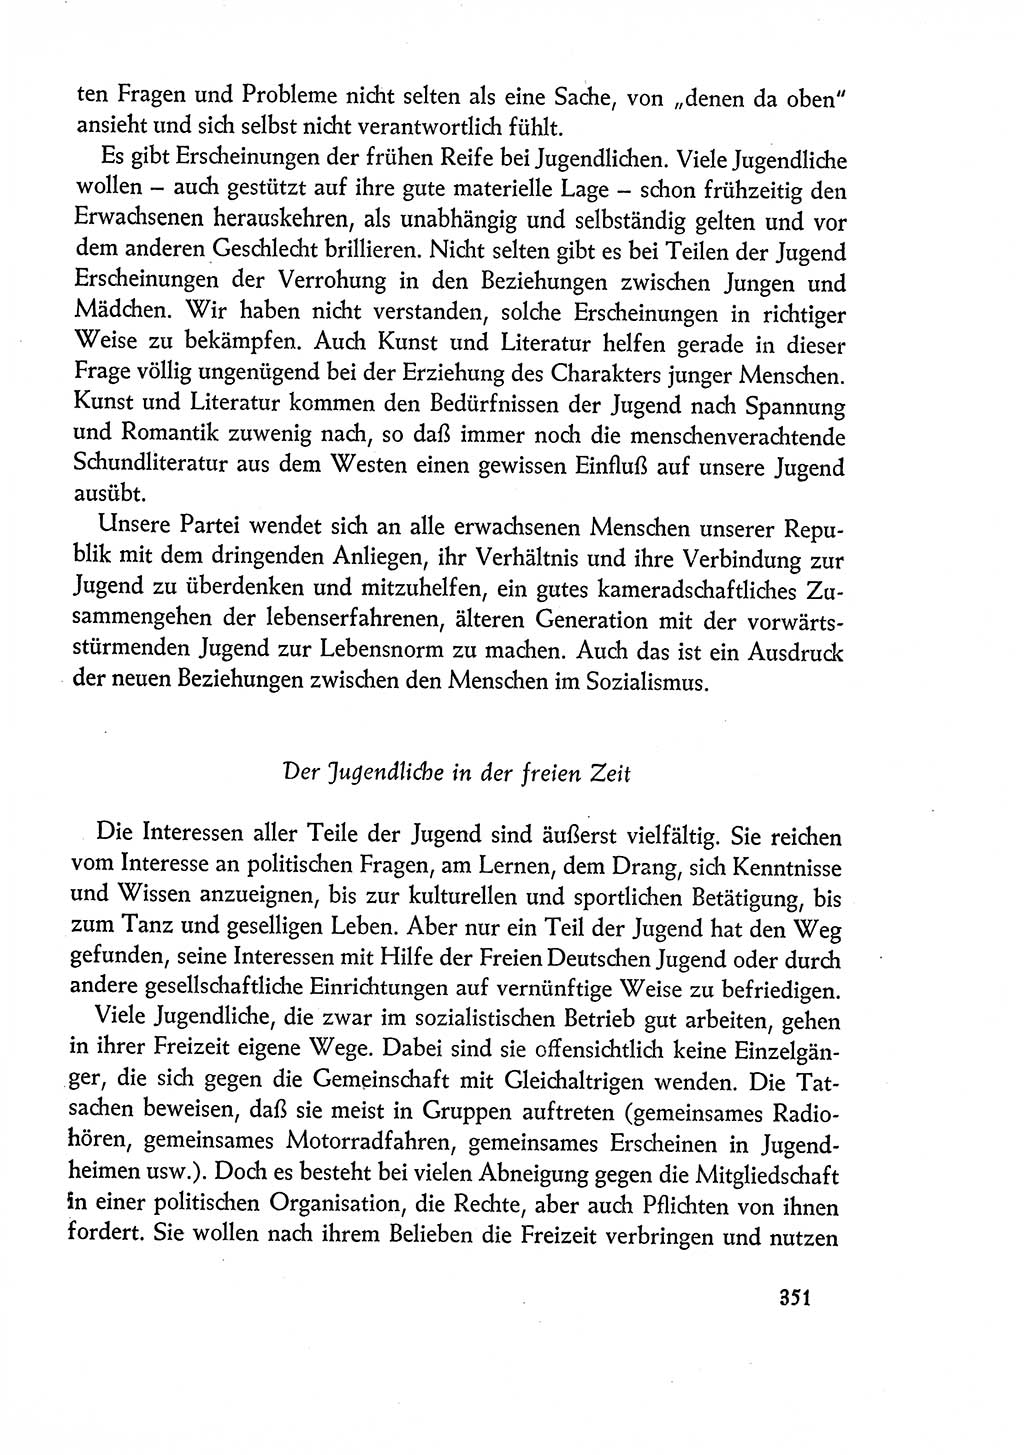 Dokumente der Sozialistischen Einheitspartei Deutschlands (SED) [Deutsche Demokratische Republik (DDR)] 1960-1961, Seite 351 (Dok. SED DDR 1960-1961, S. 351)